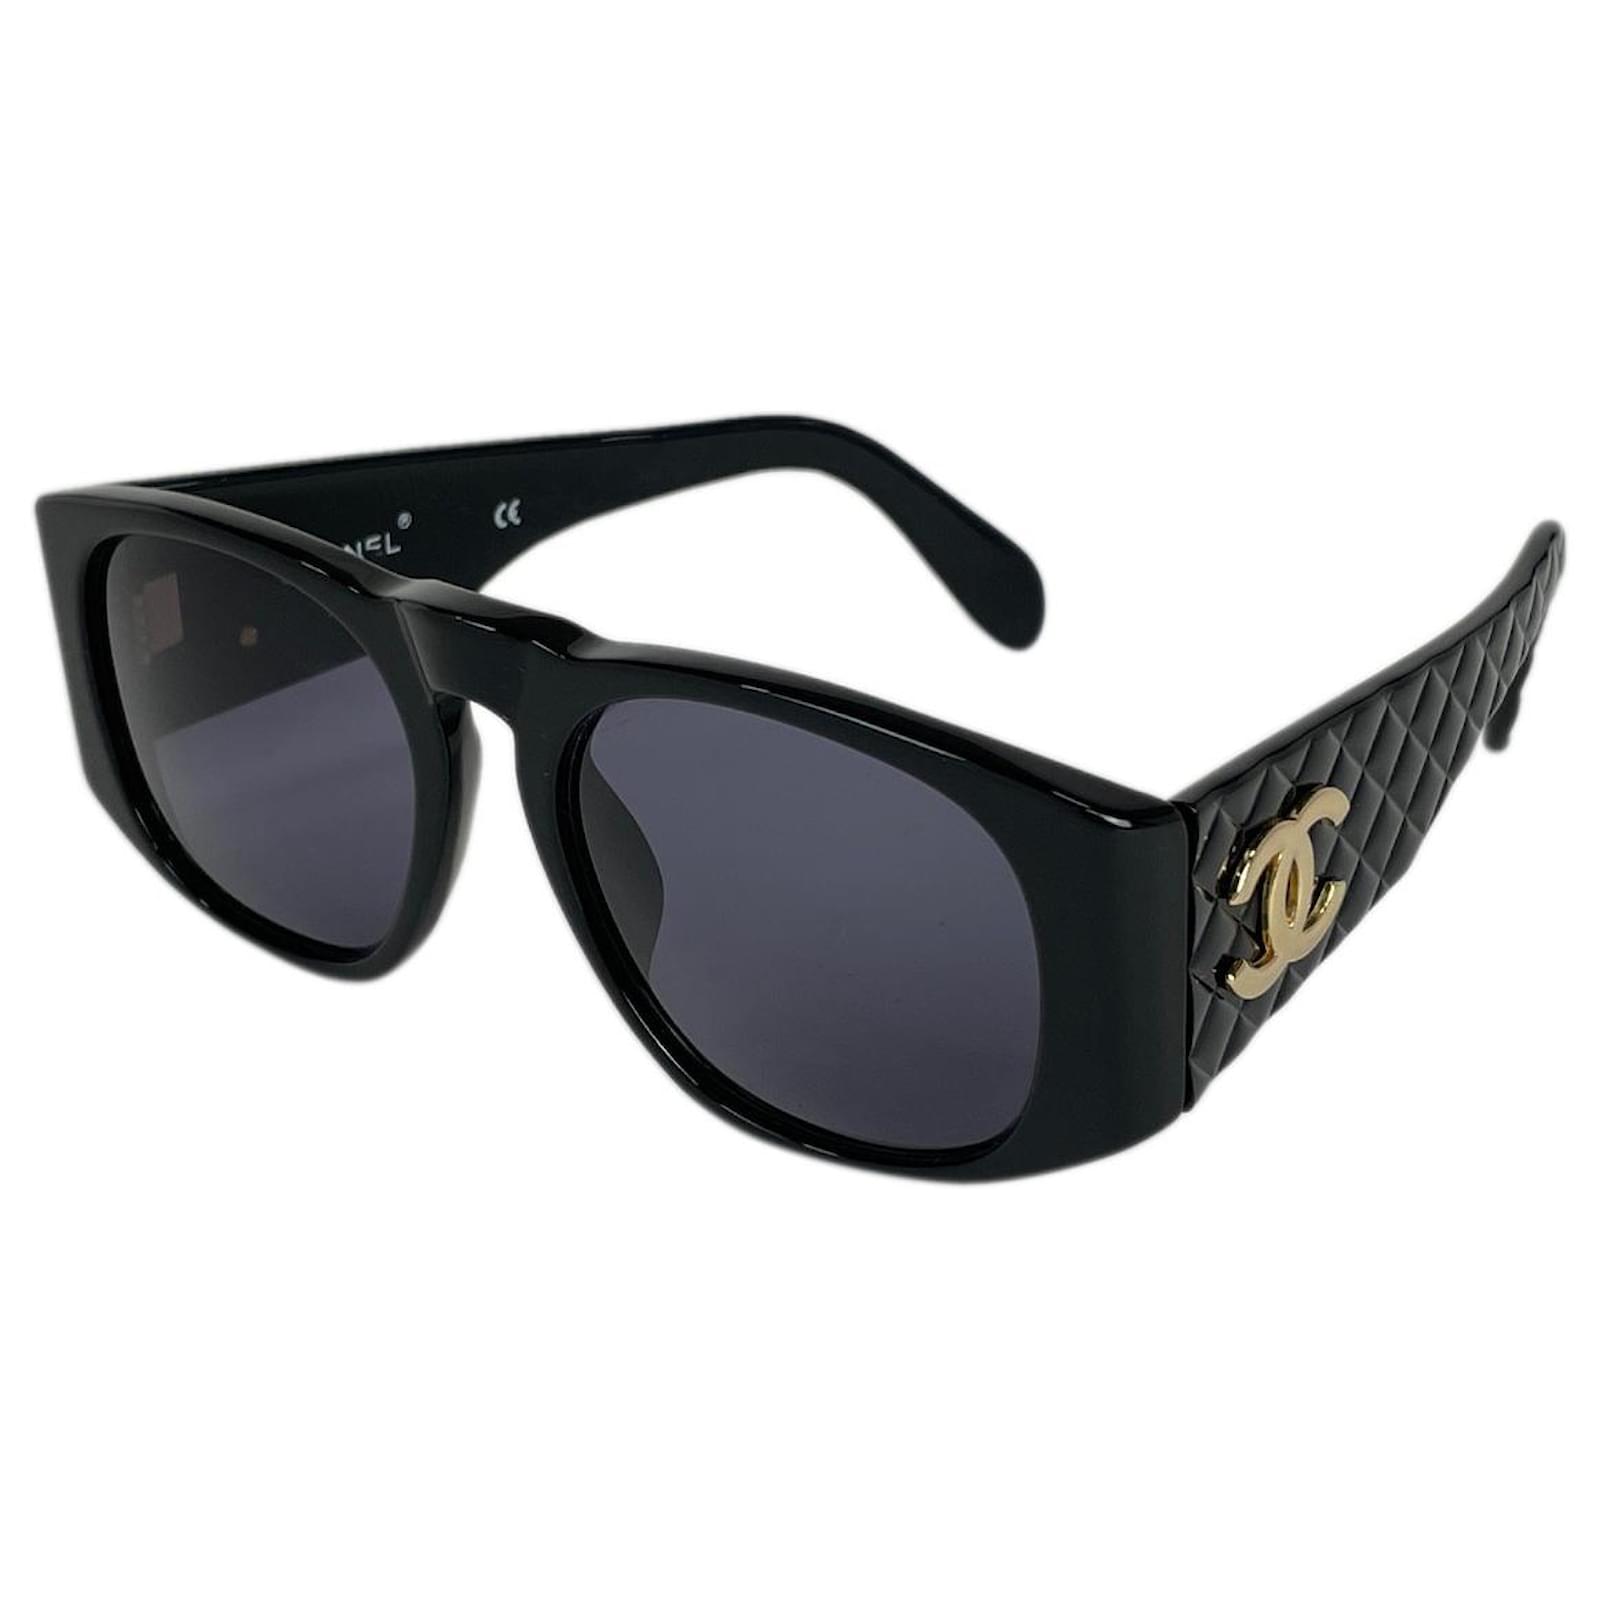 Sunglasses Chanel Black in Plastic - 33998046